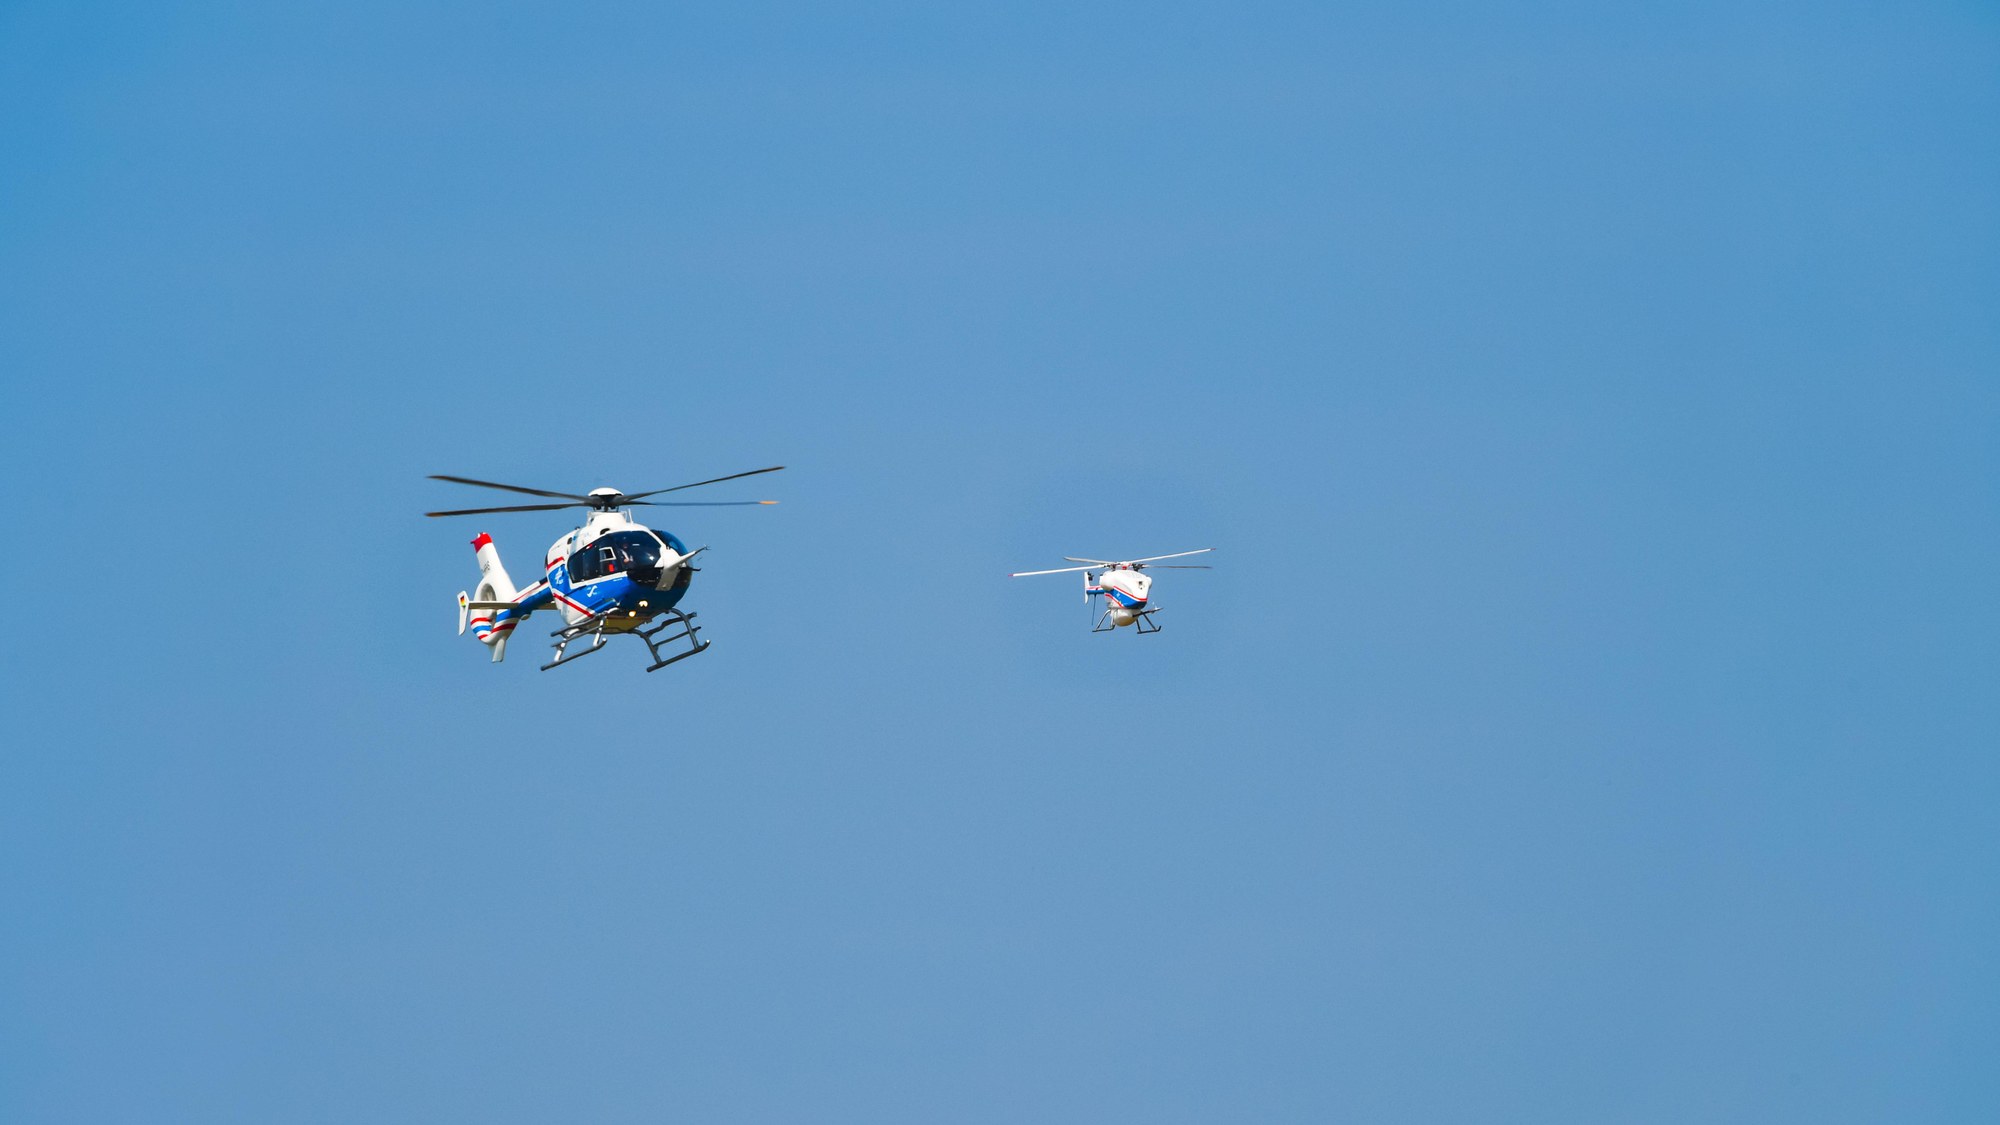 In Flugversuchen wurde das kooperative Verhalten des unbemannten Hubschraubers erprobt